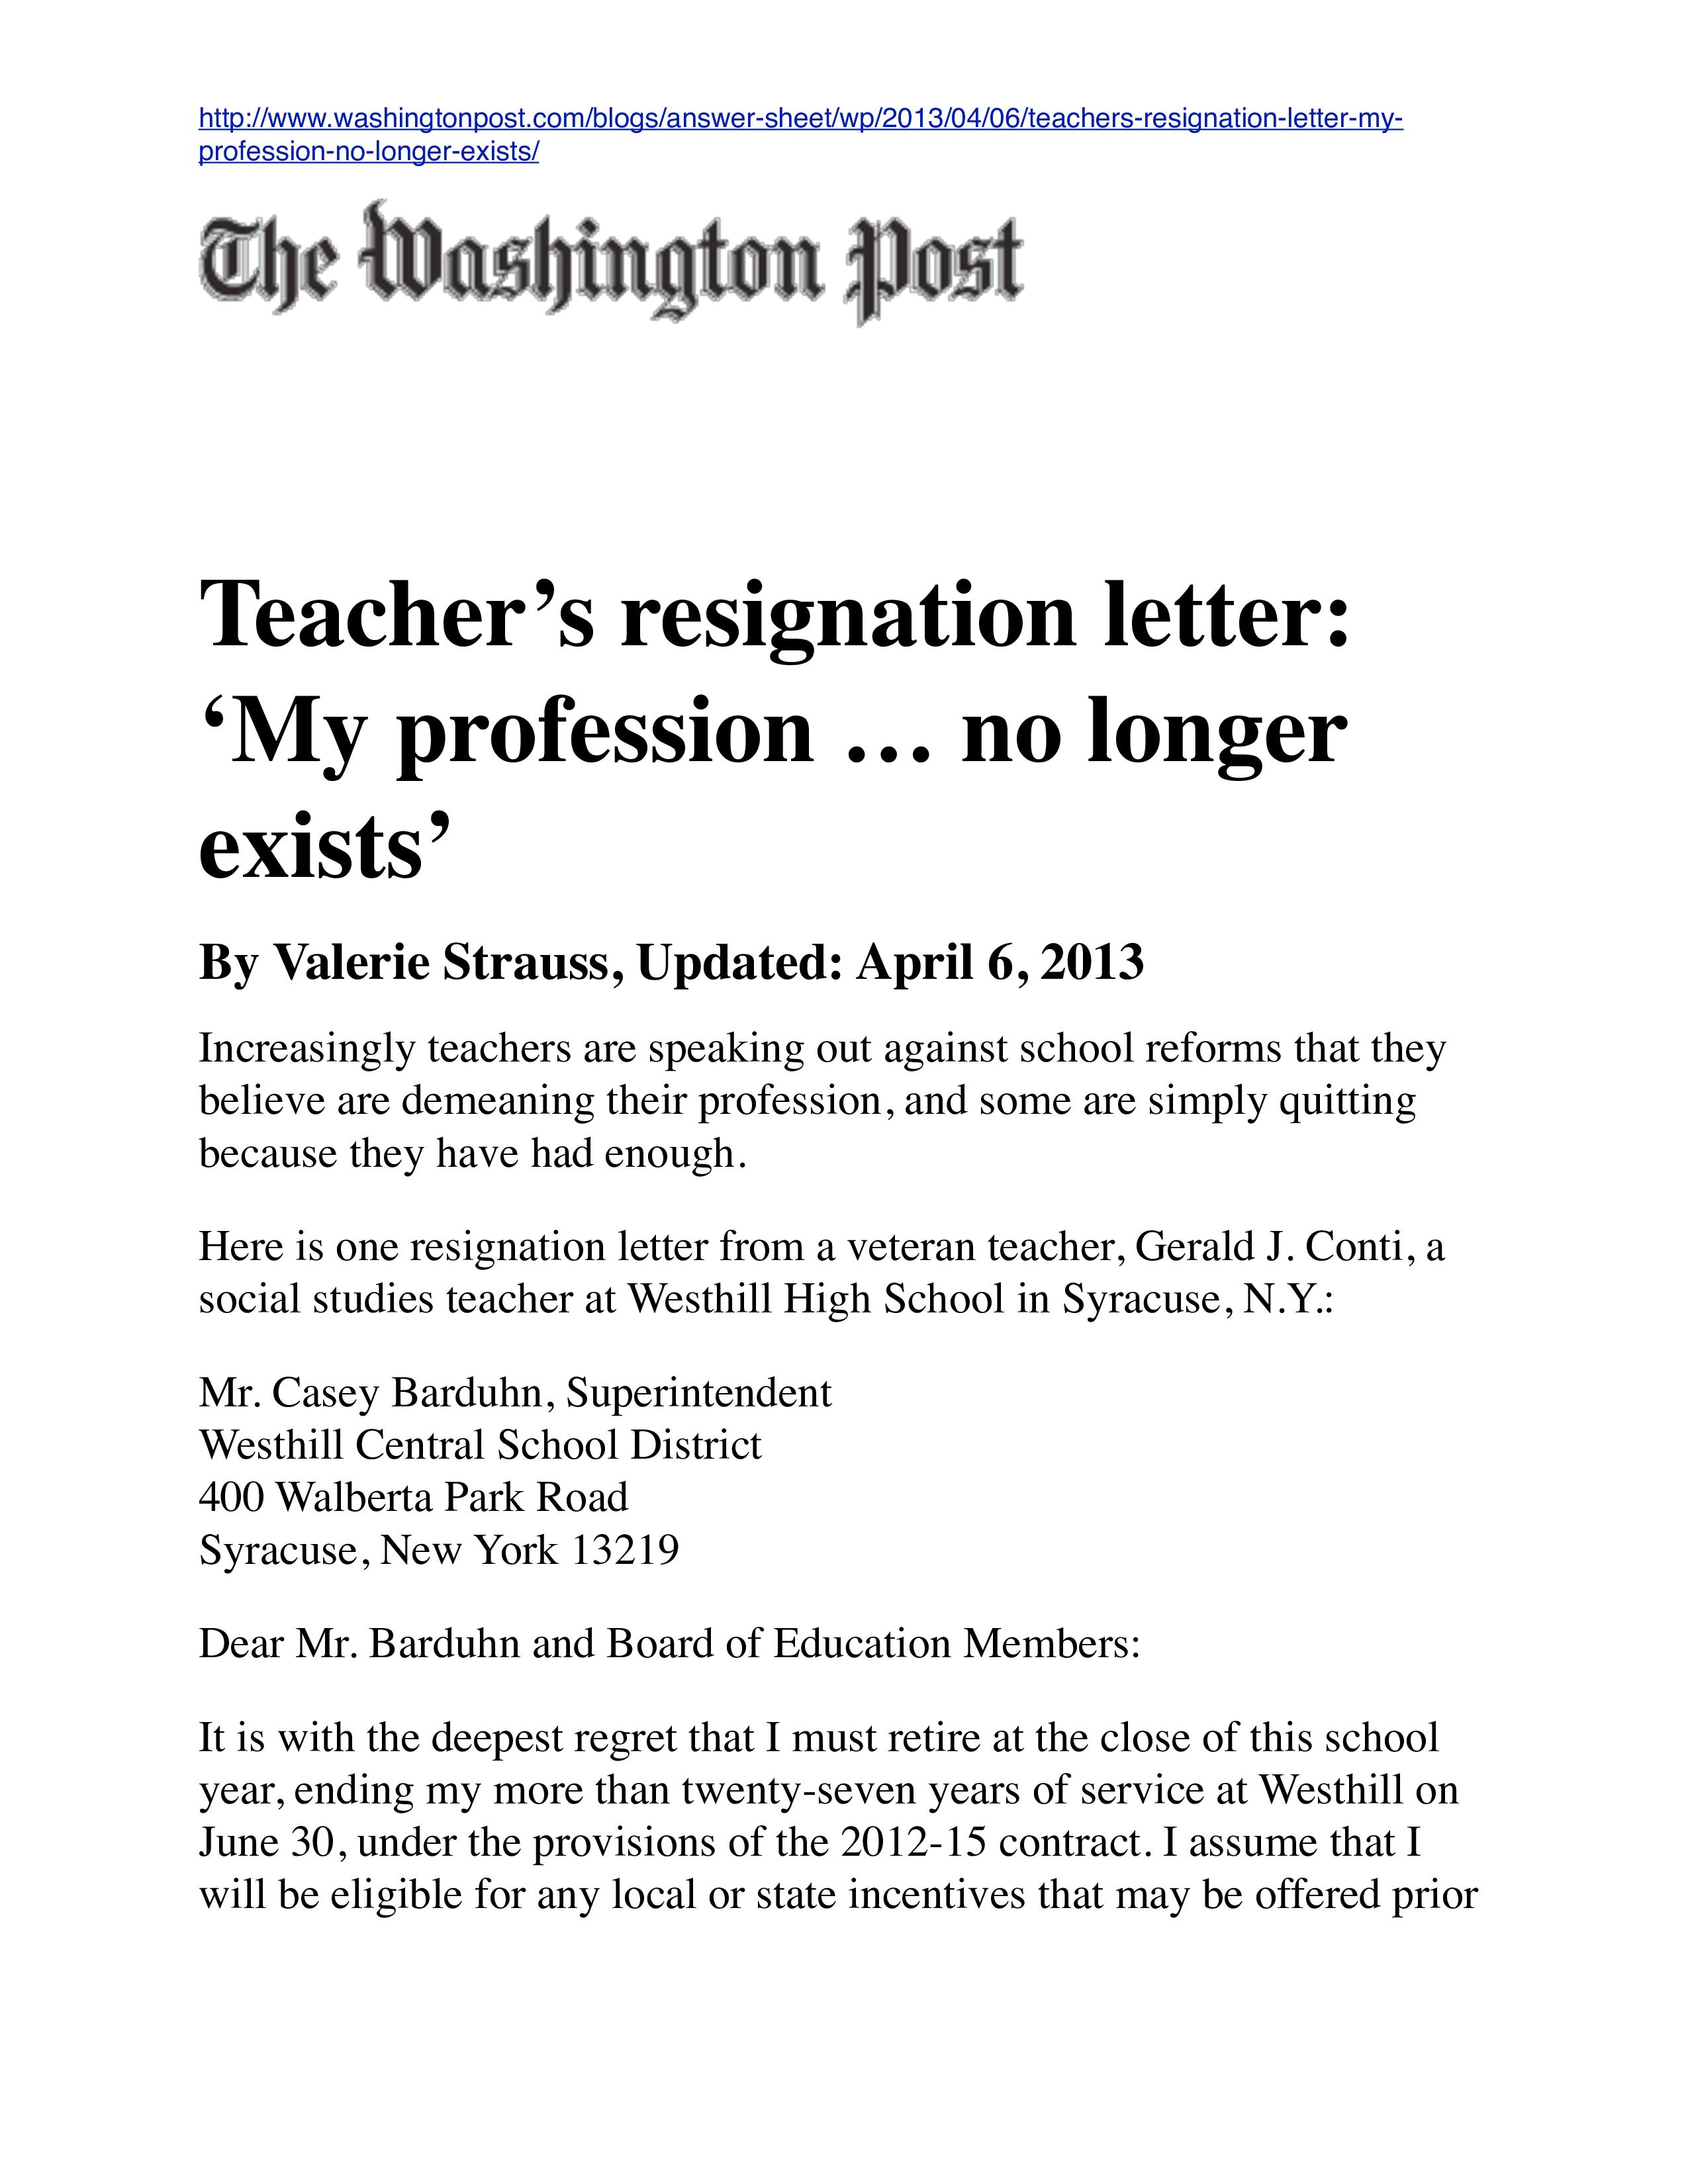 Sample Letter Of Resignation For Teacher from www.allbusinesstemplates.com